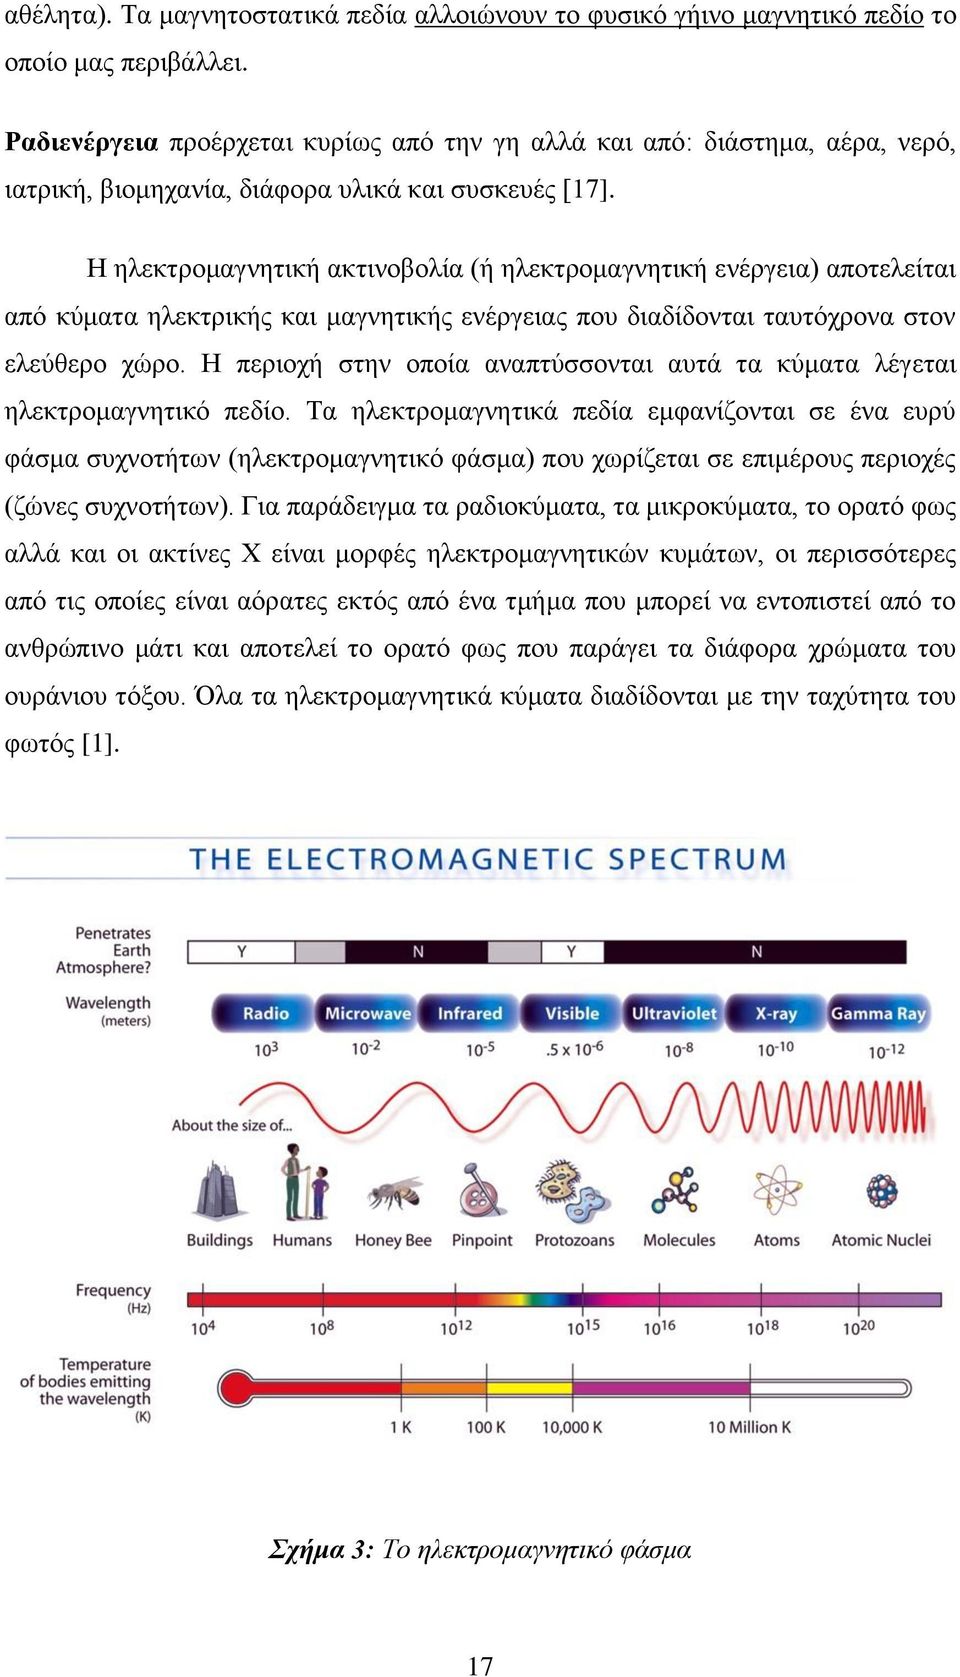 Η ηλεκτρομαγνητική ακτινοβολία (ή ηλεκτρομαγνητική ενέργεια) αποτελείται από κύματα ηλεκτρικής και μαγνητικής ενέργειας που διαδίδονται ταυτόχρονα στον ελεύθερο χώρο.